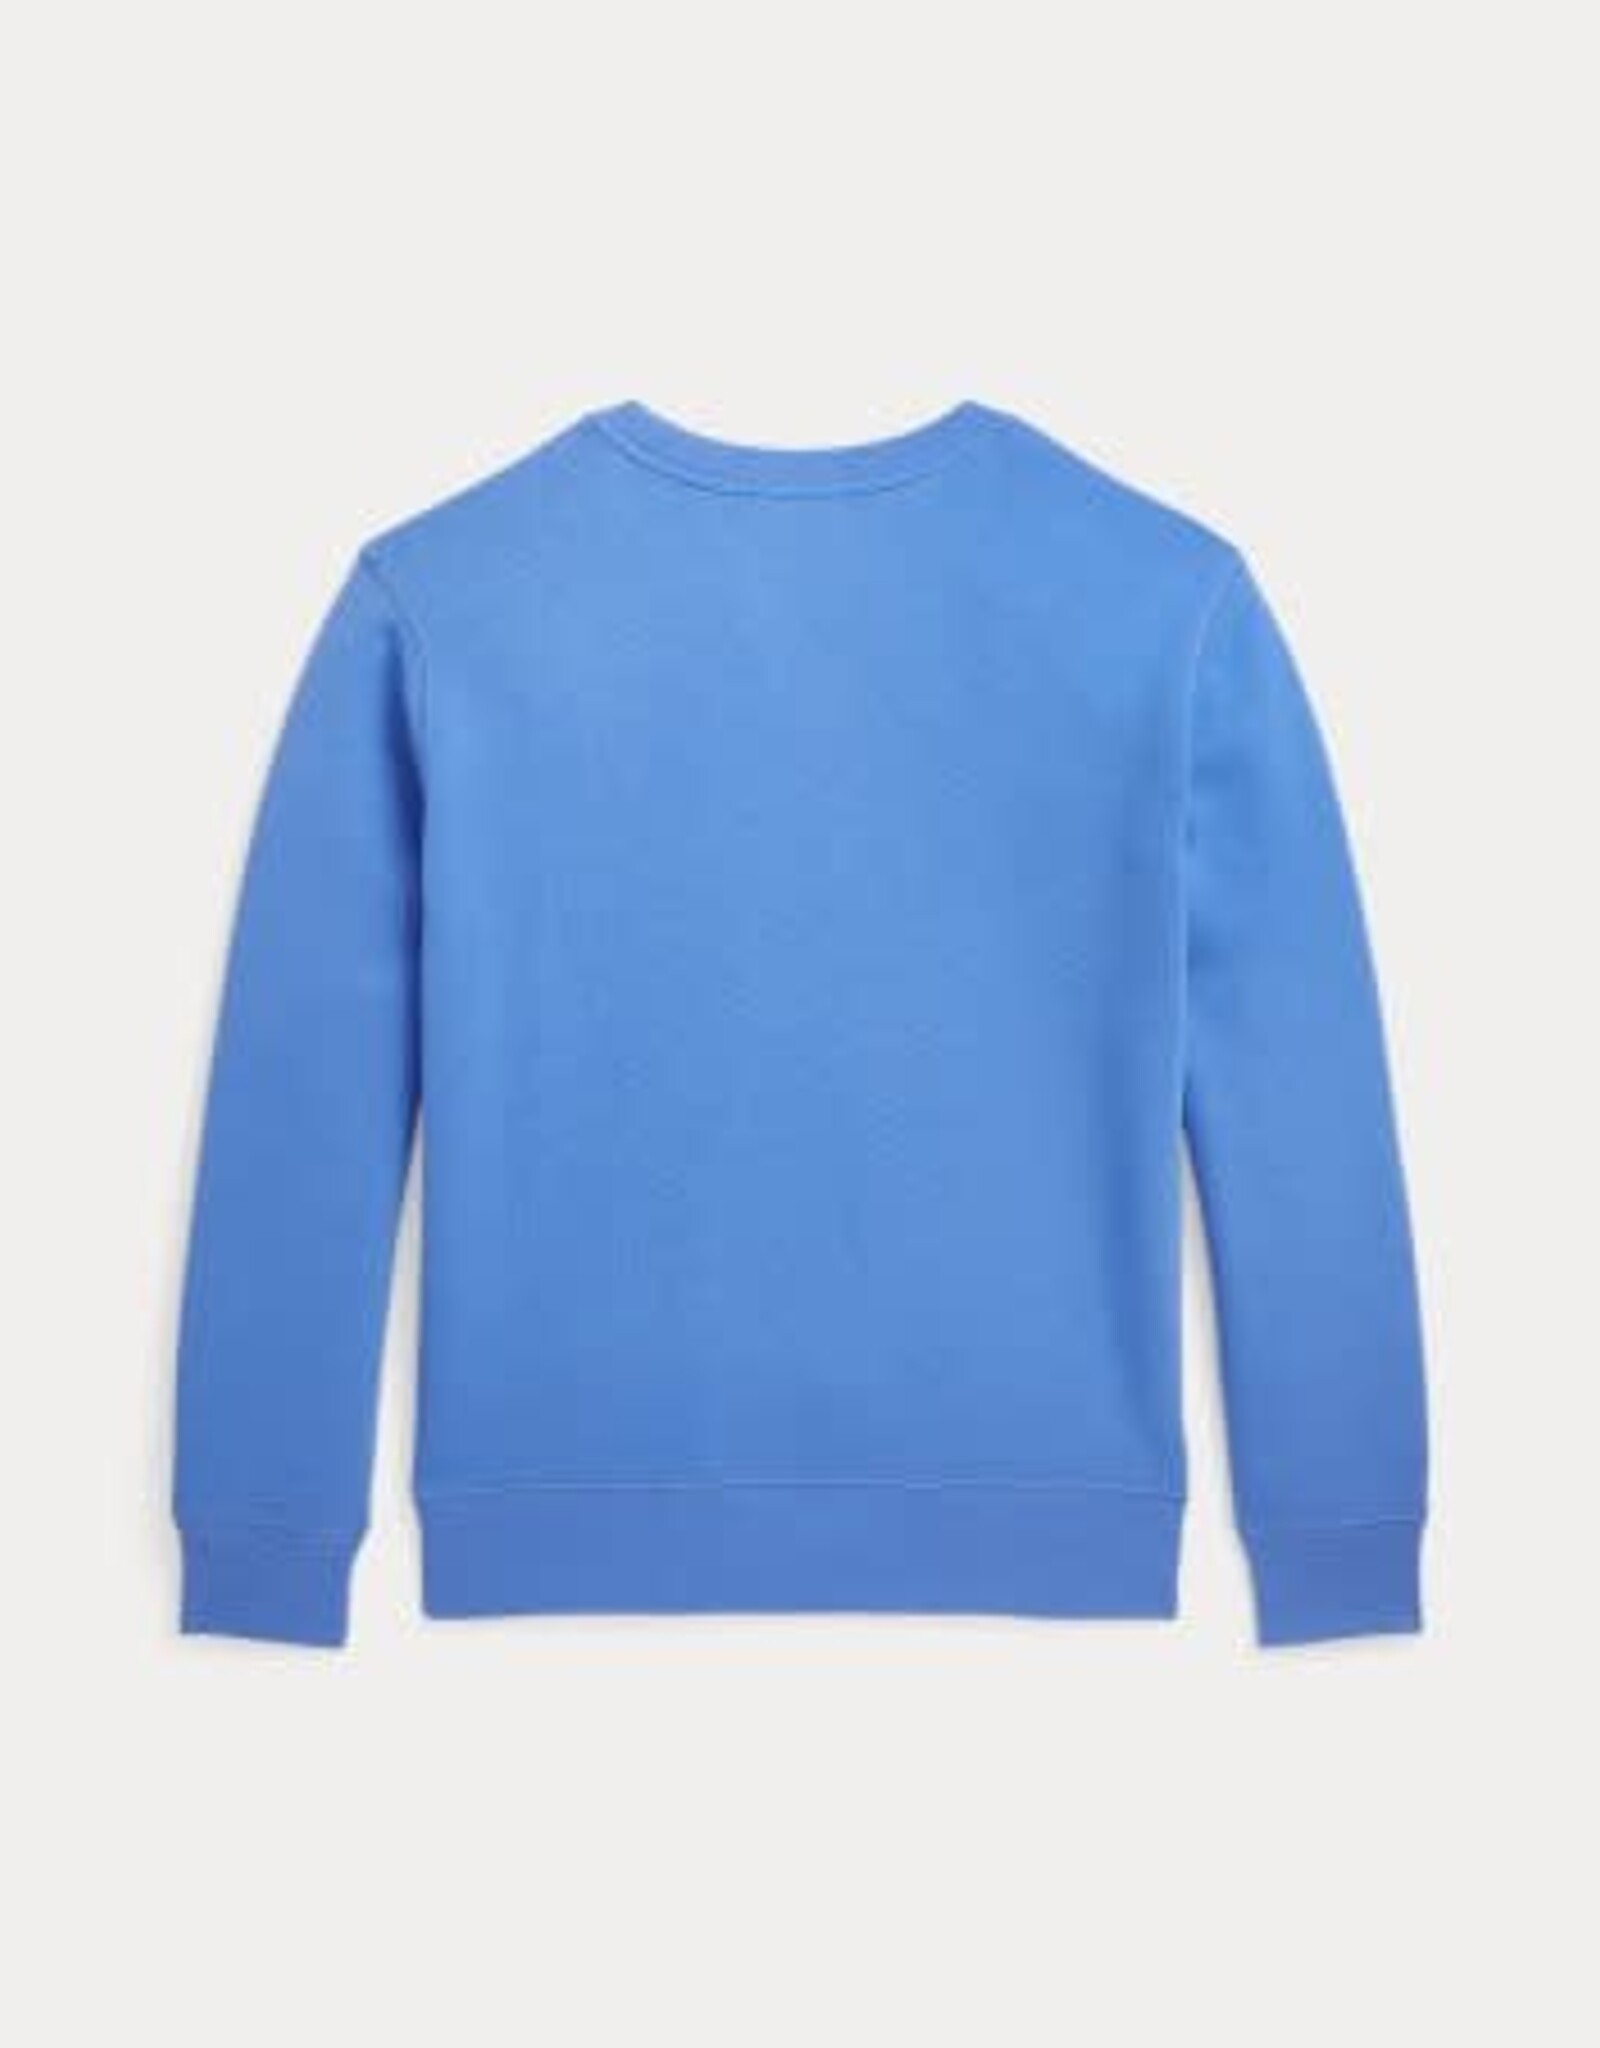 RALPH LAUREN RALPH LAUREN Sweater blauw